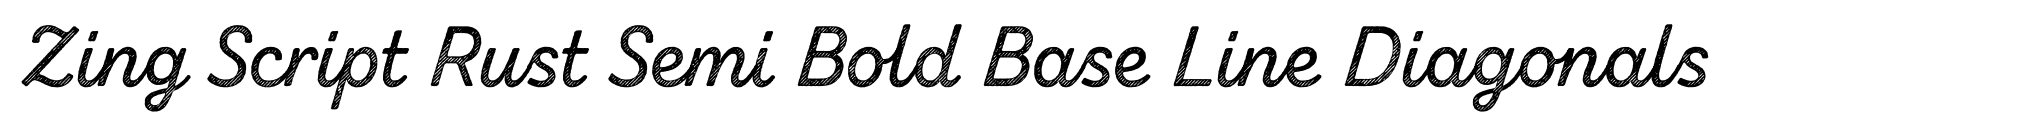 Zing Script Rust Semi Bold Base Line Diagonals image